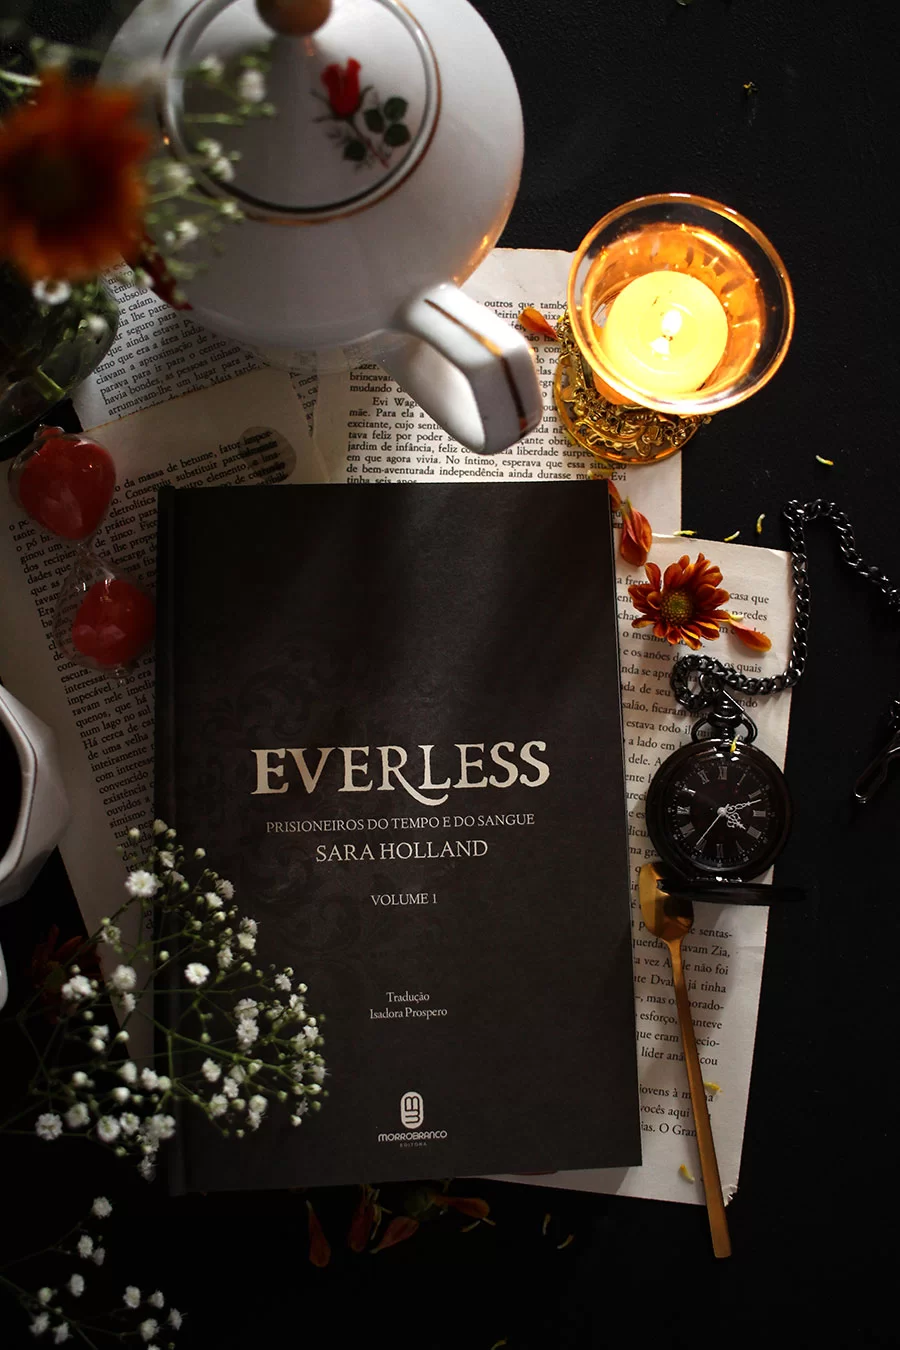 Everless: Prisioneiros do tempo e do sangue - Sara Holland